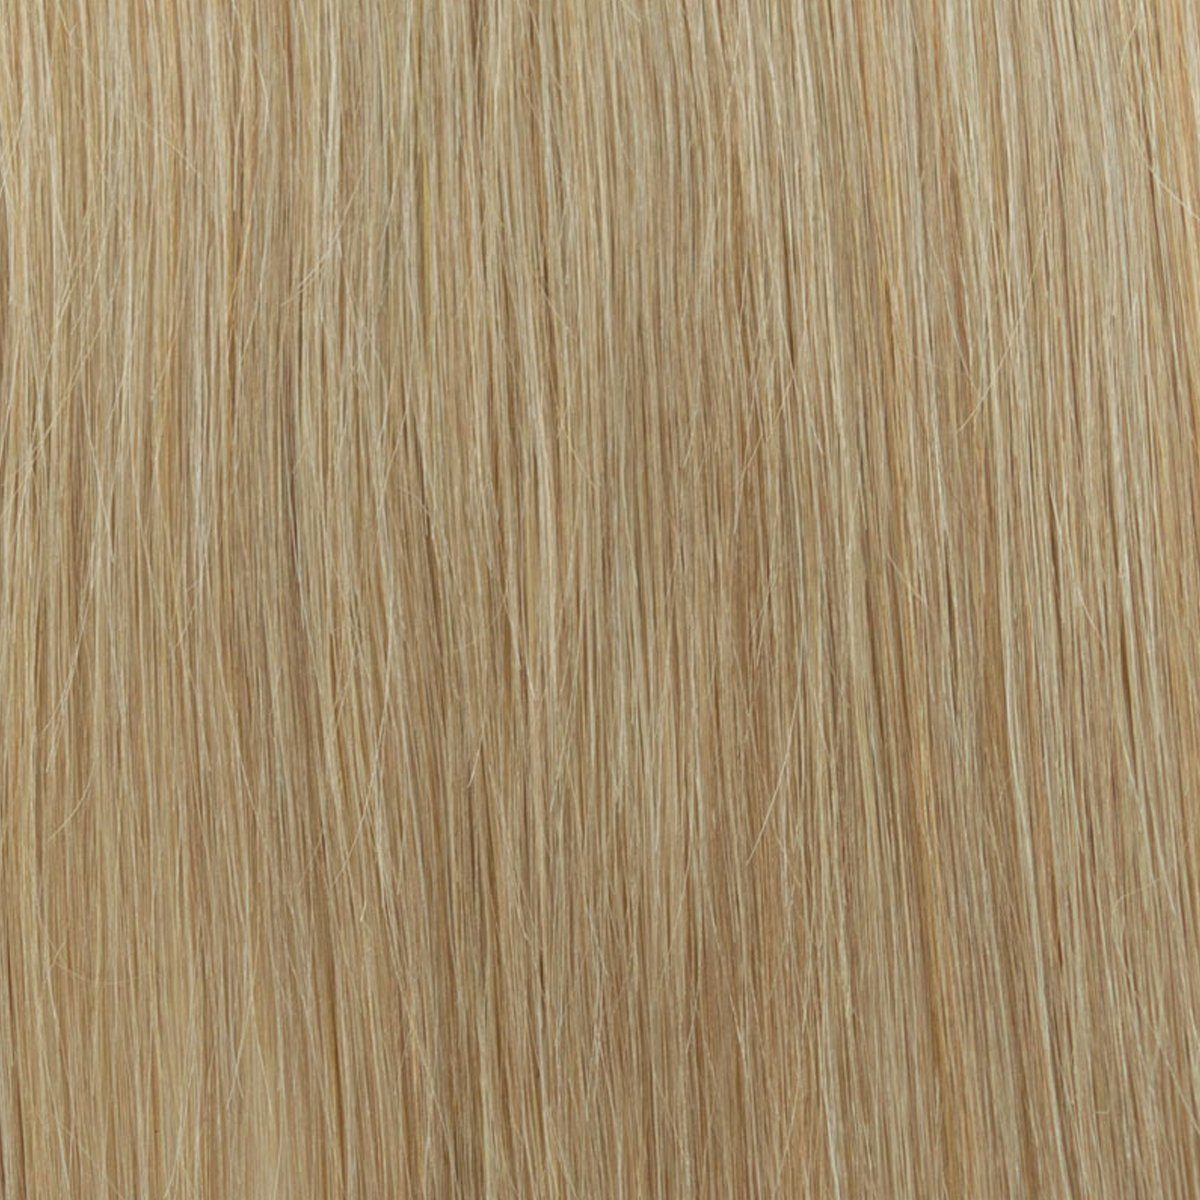 EH - Haarverlängerung Echthaar cm mit Set Clip-in-Extensions, 60 aschblond 18 Echthaar 7-teiliges Echthaar-Extension 130 Gramm